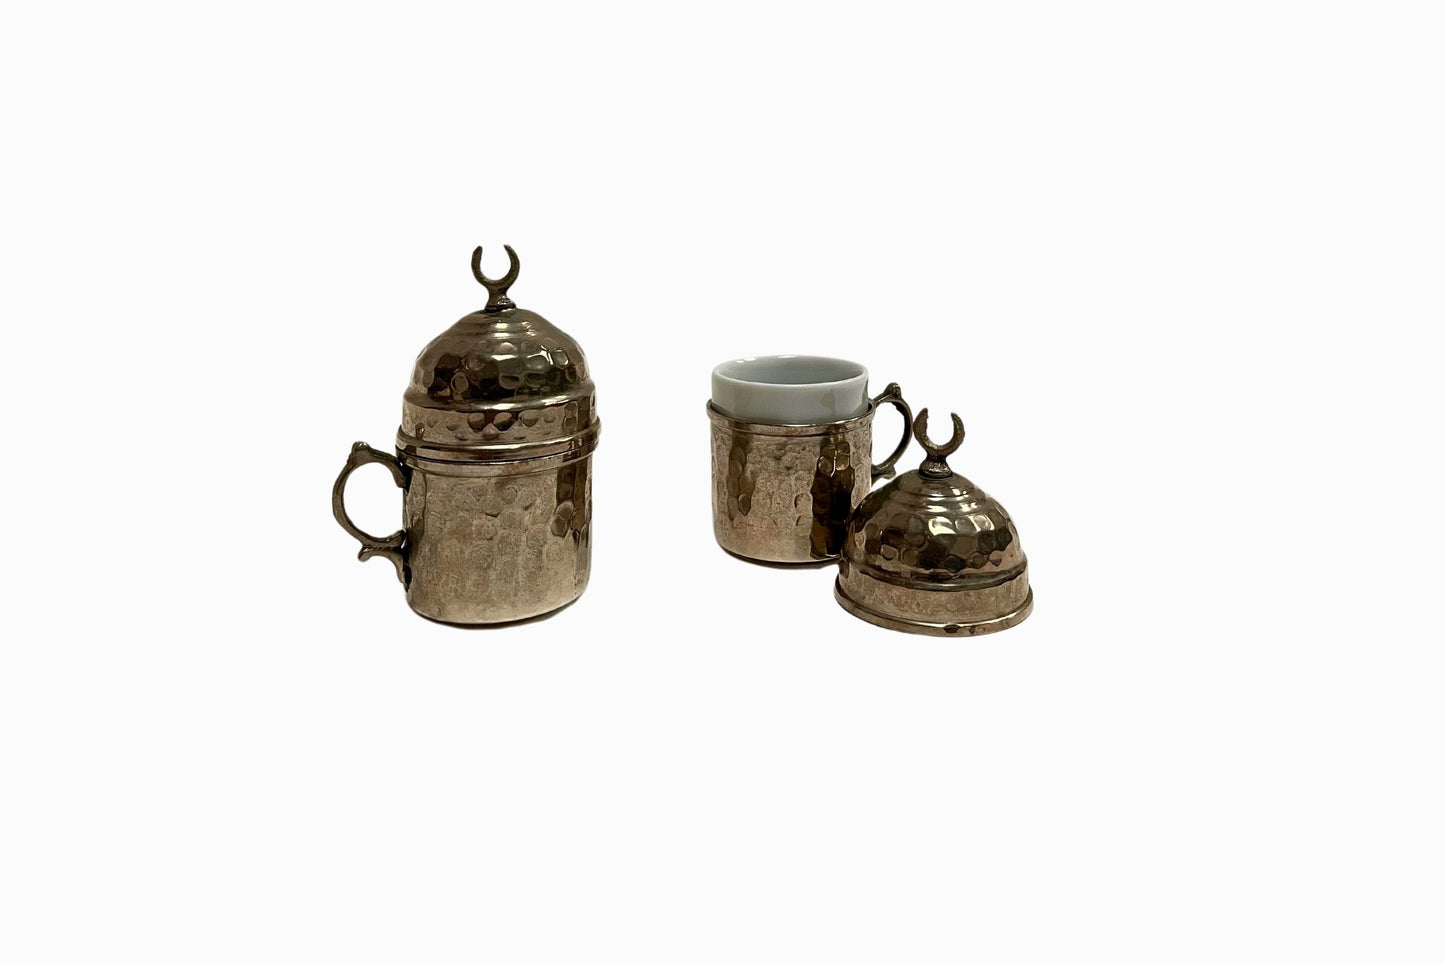 A pair of coffee cups encased in beaten silver metal